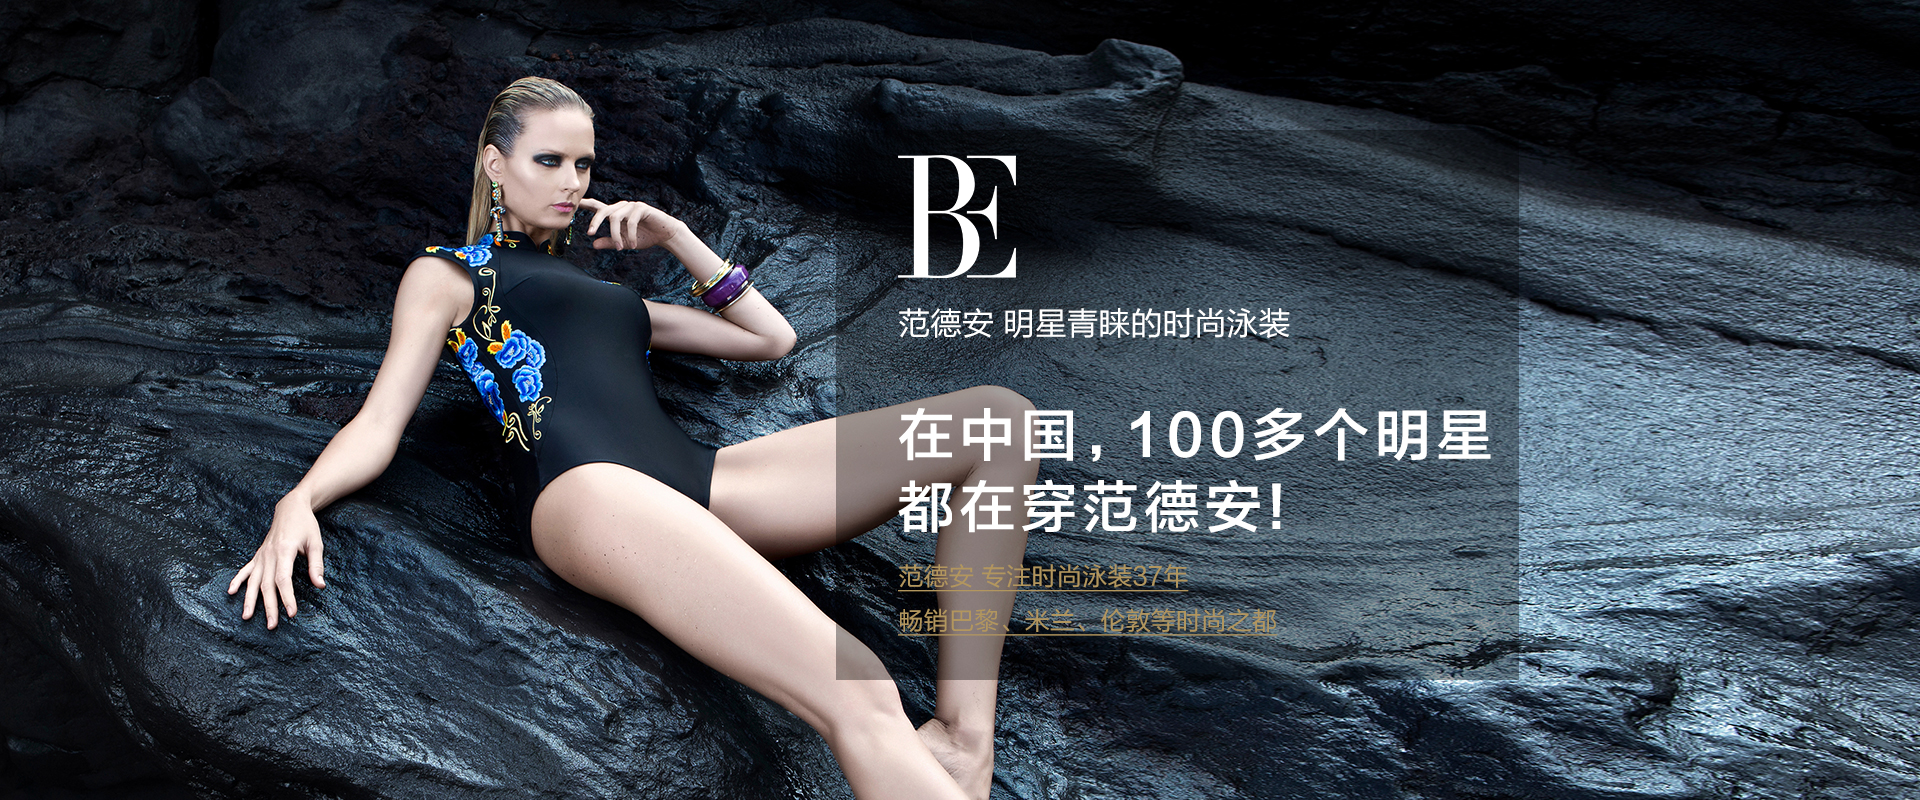 全球時尚泳裝領軍者BE范德安滿繡大師系列全球首發，驚艷三亞國際免稅城